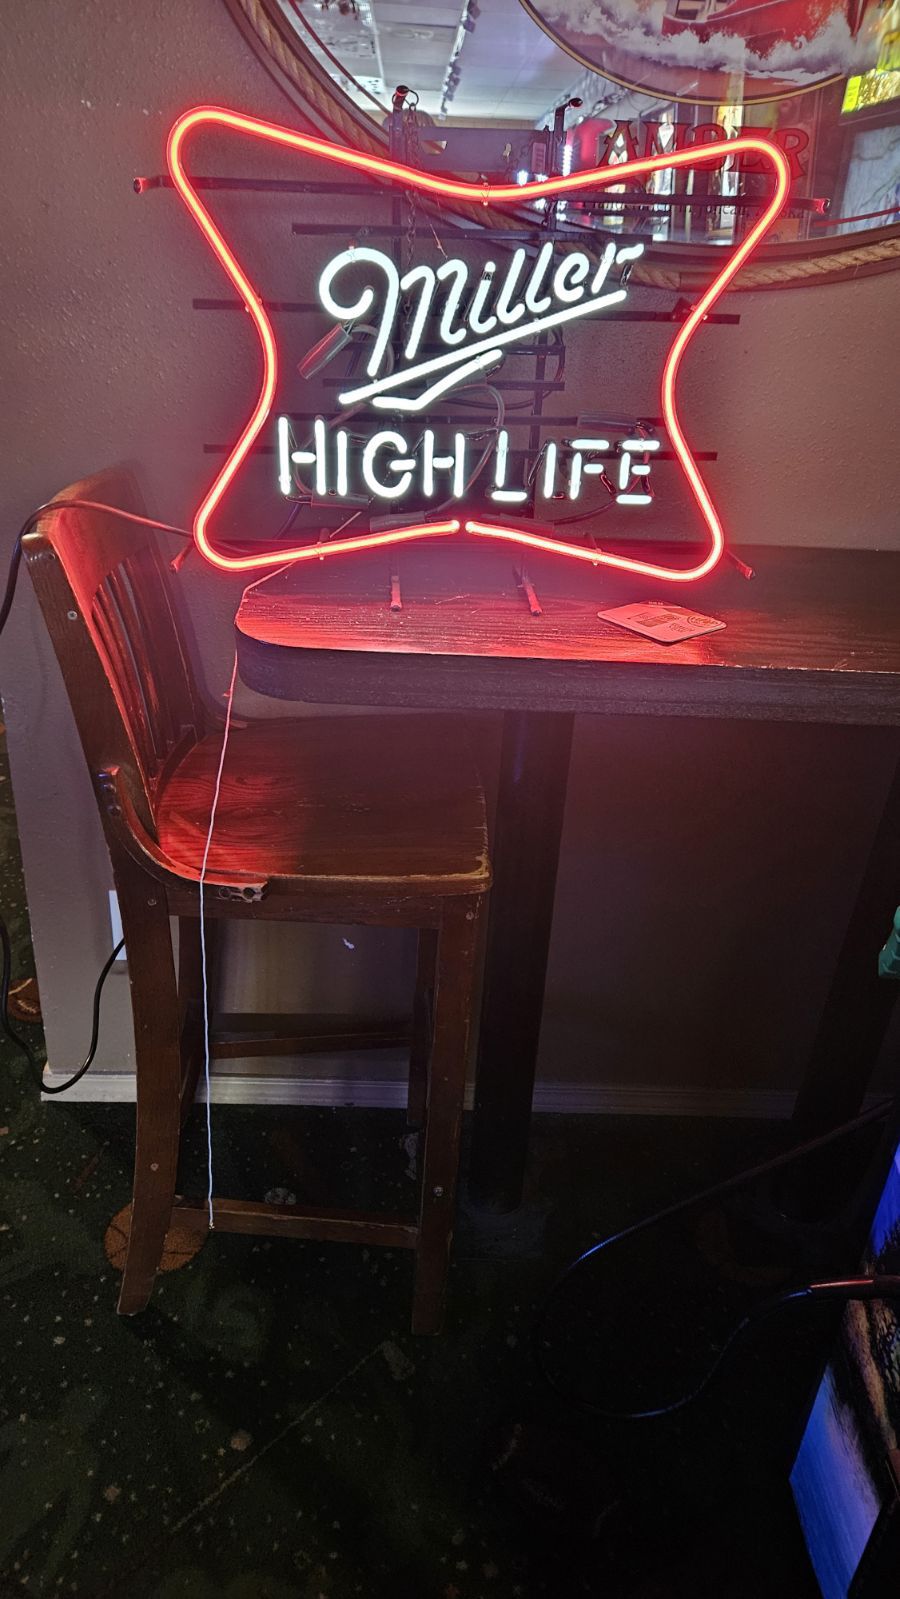 Miller High life Neon Beer Sign